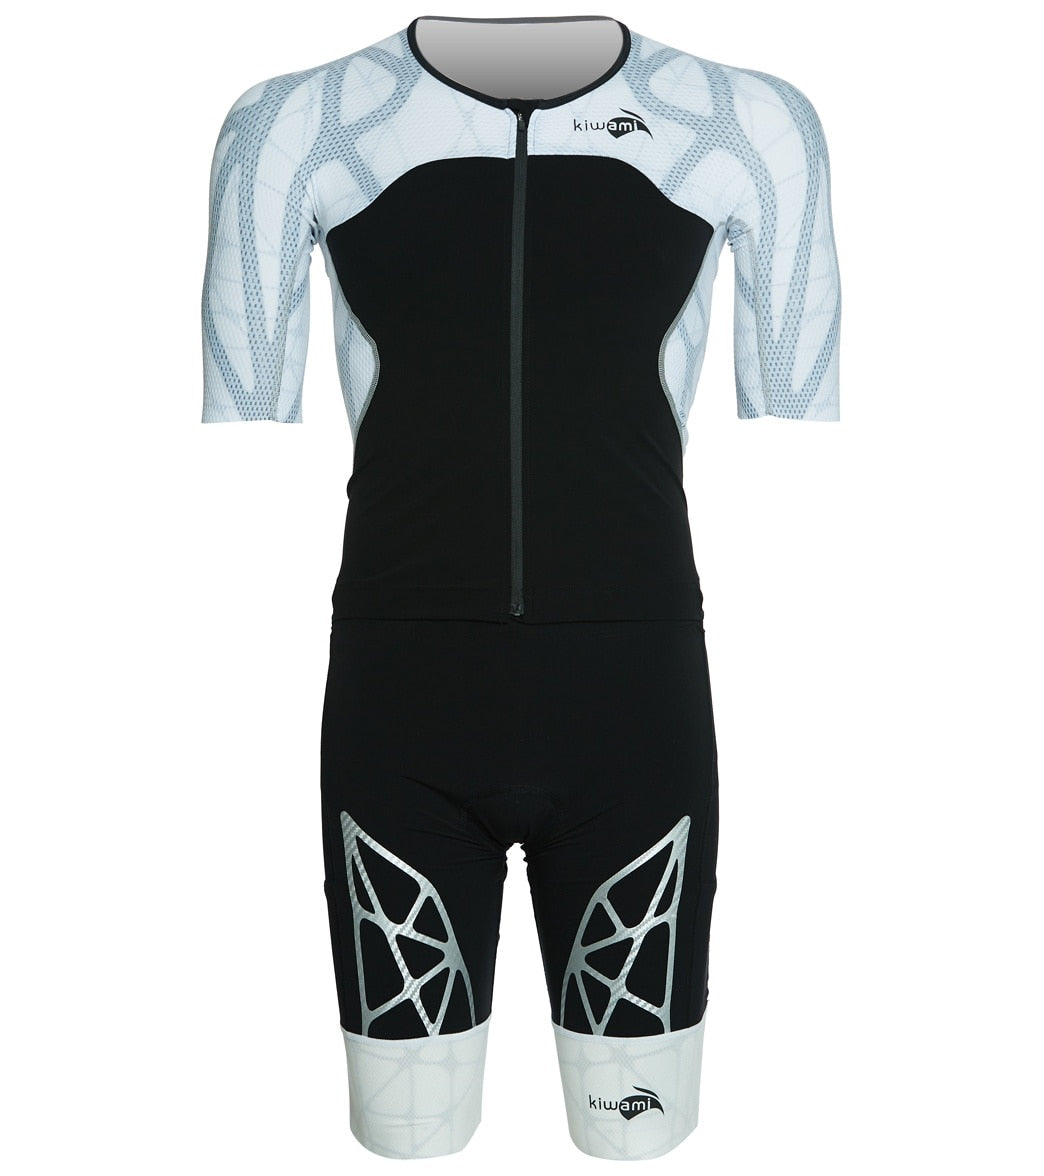 Kiwami Men's Spider Ld2 Aero Trisuit - Black/White Small Elastane/Polyamide - Swimoutlet.com